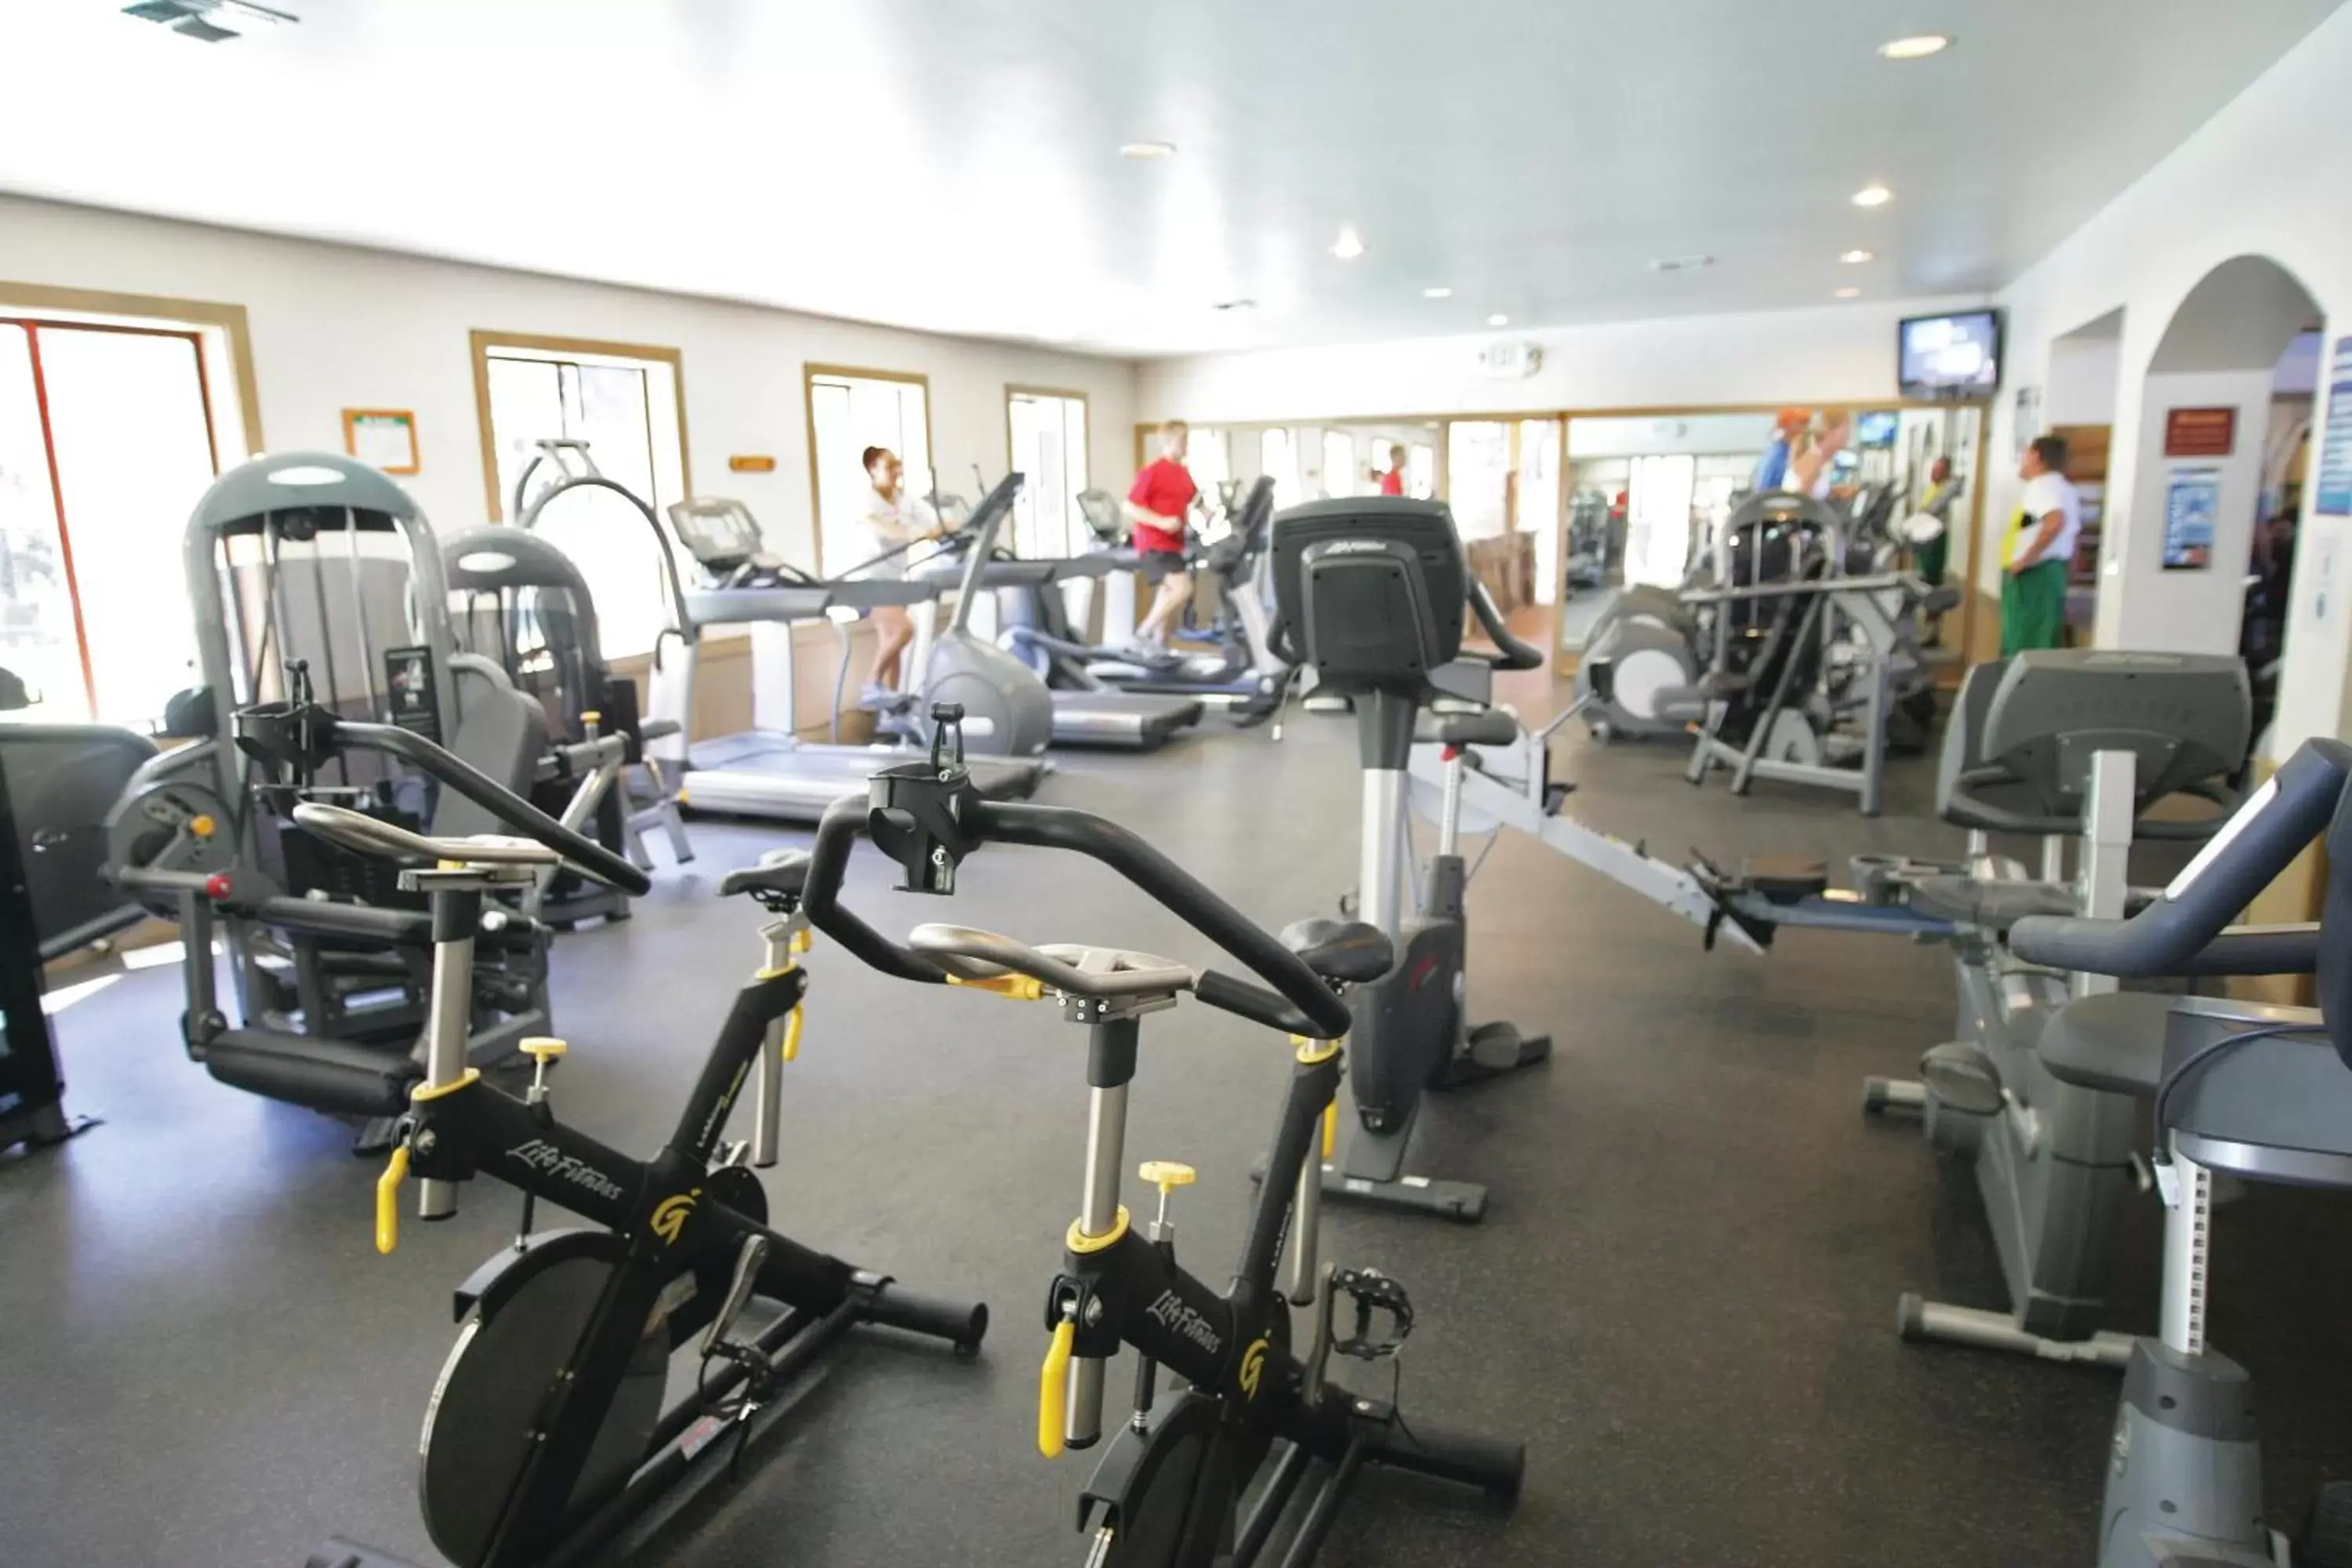 Fitness centre/facilities, Fitness Center/Facilities in Northstar California Resort